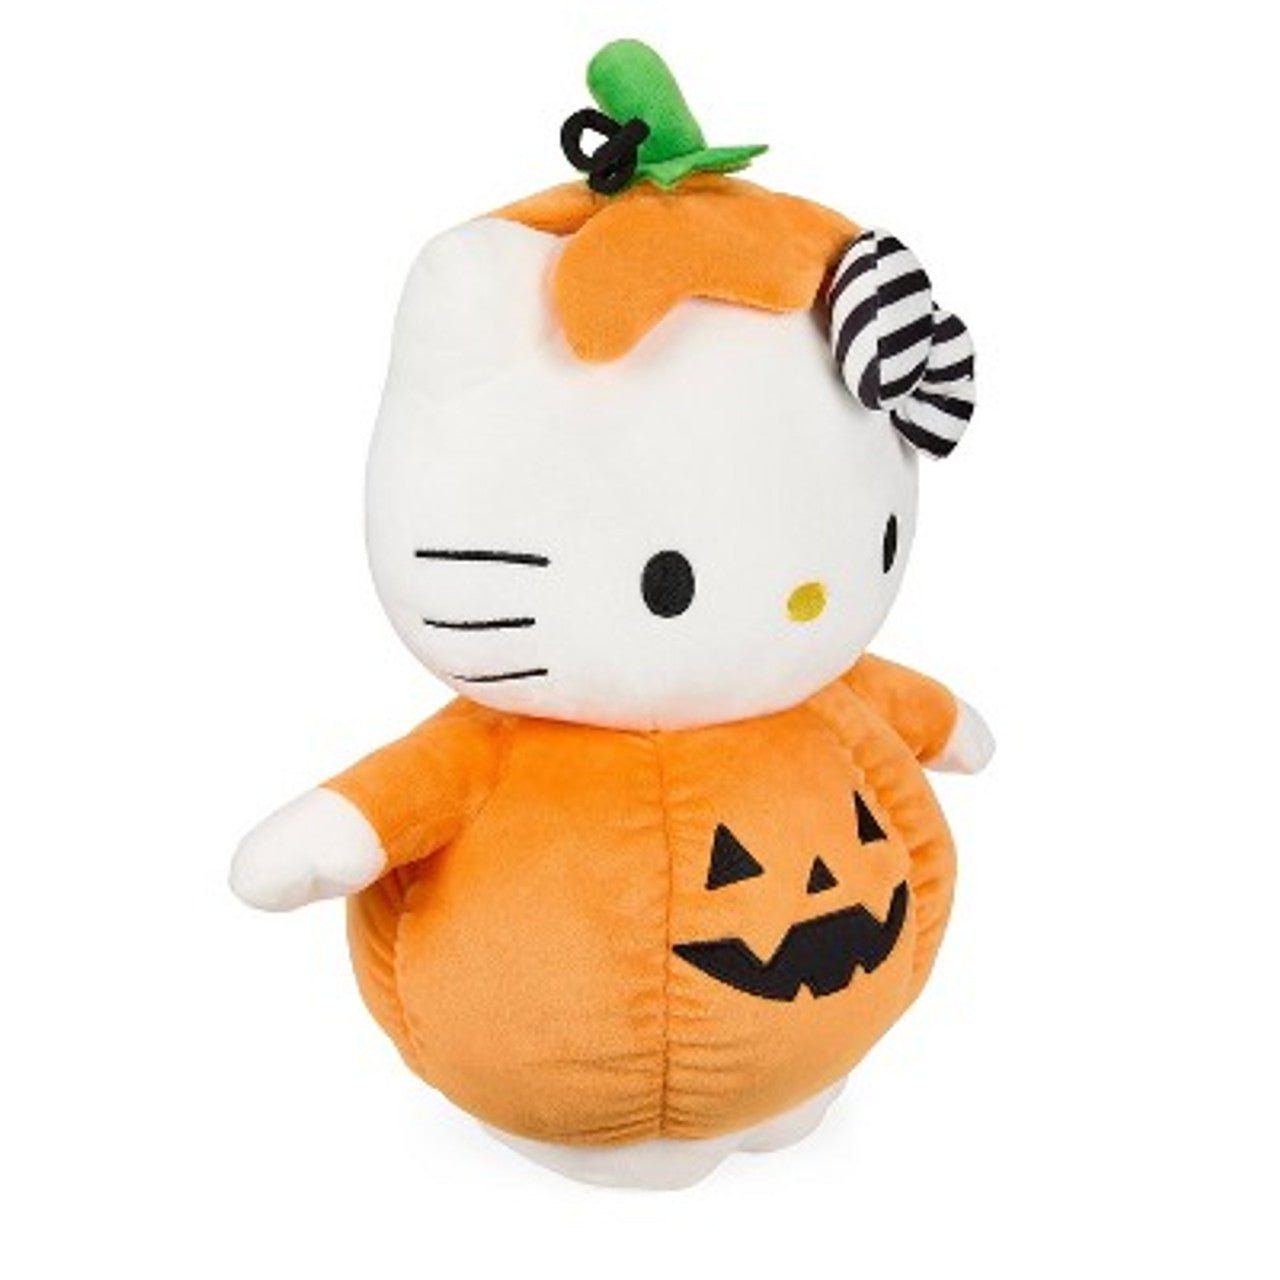 New - NECA Sanrio Hello Kitty Halloween Pumpkin 13" Medium Plush Action Figure